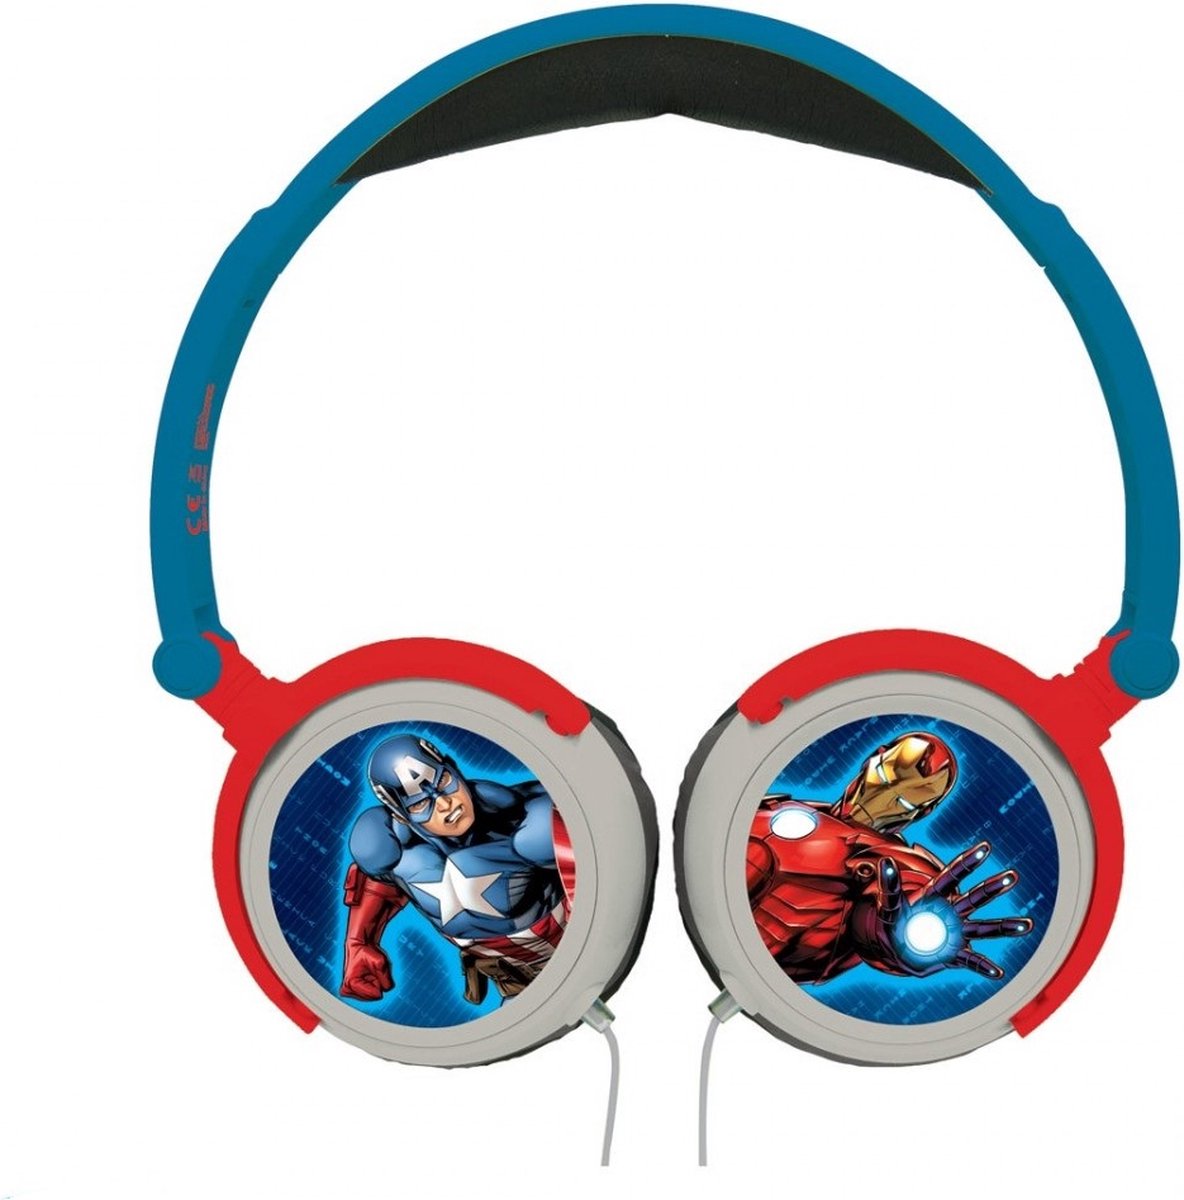 Lexibook- The Avengers stereo headphones